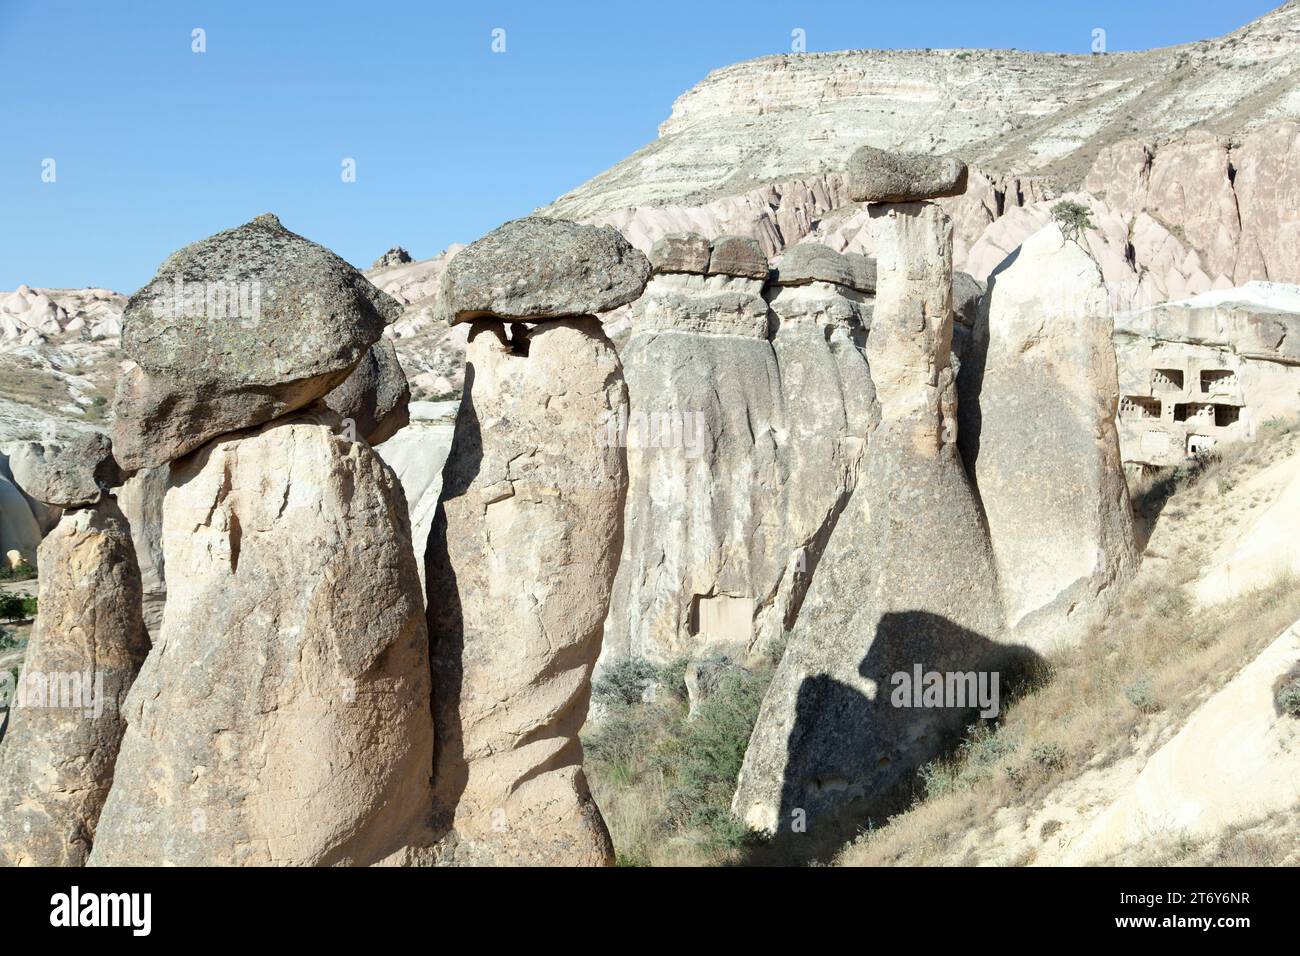 La vista panorámica de las famosas rocas erosionadas con chimeneas de hadas en el Valle Rojo, región de Capadocia (Turquía). Foto de stock